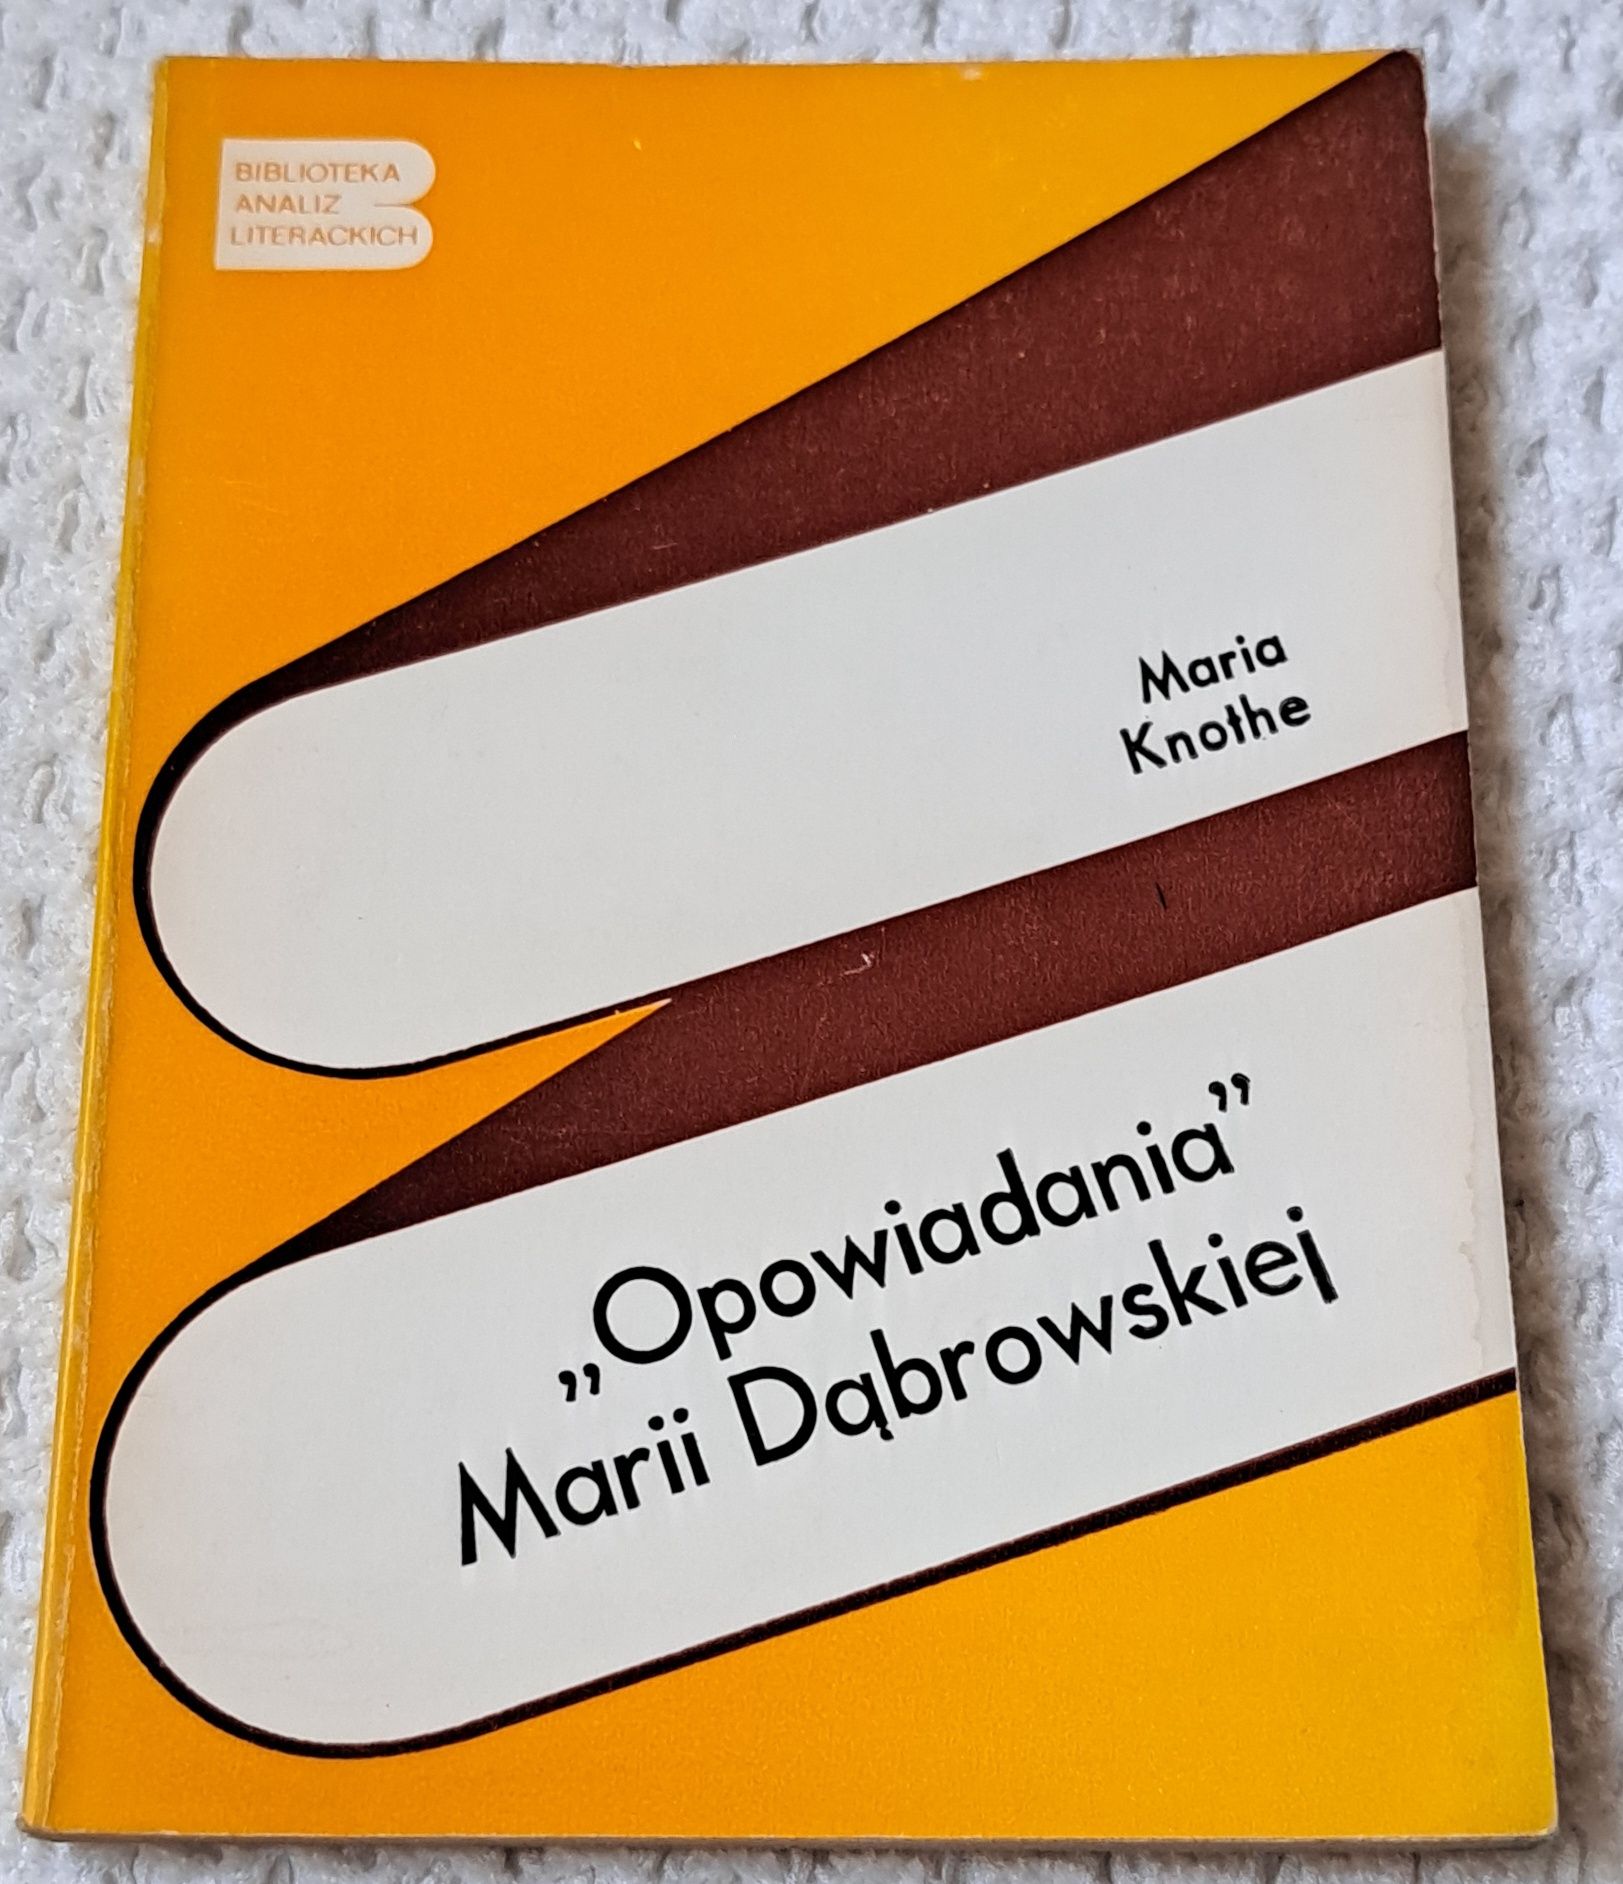 Opowiadania Marii Dąbrowskiej. M. Knothe.